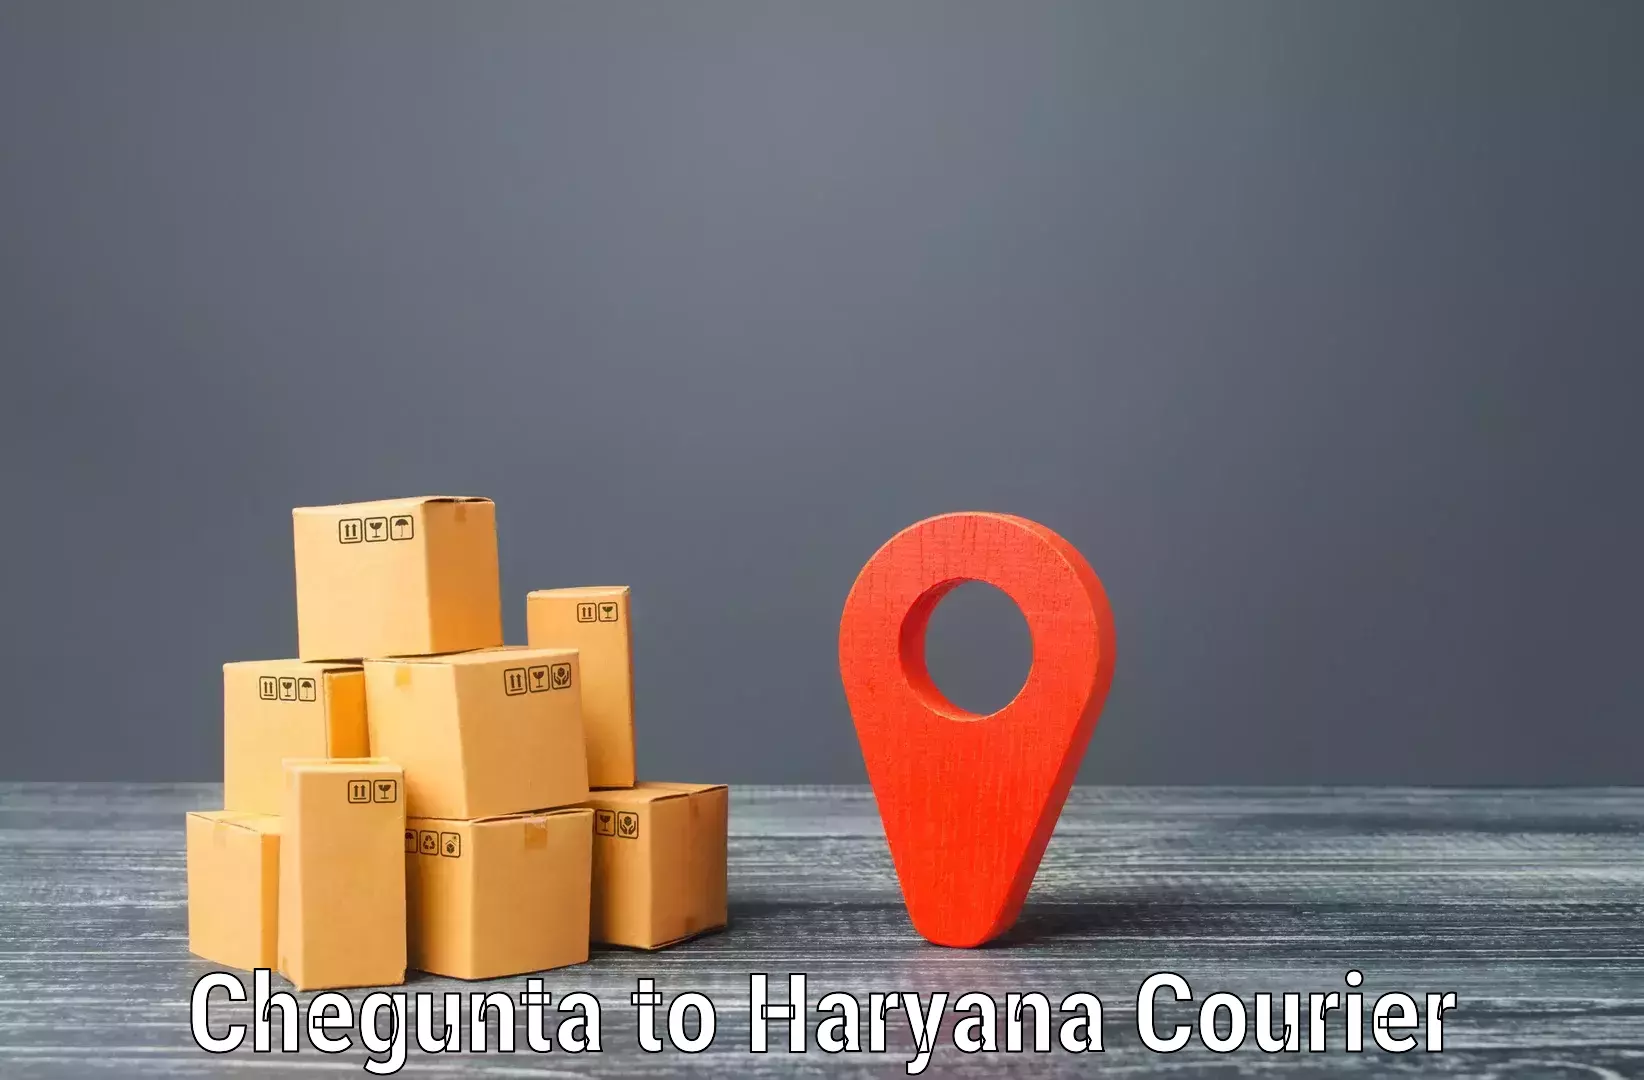 Cargo courier service Chegunta to NCR Haryana